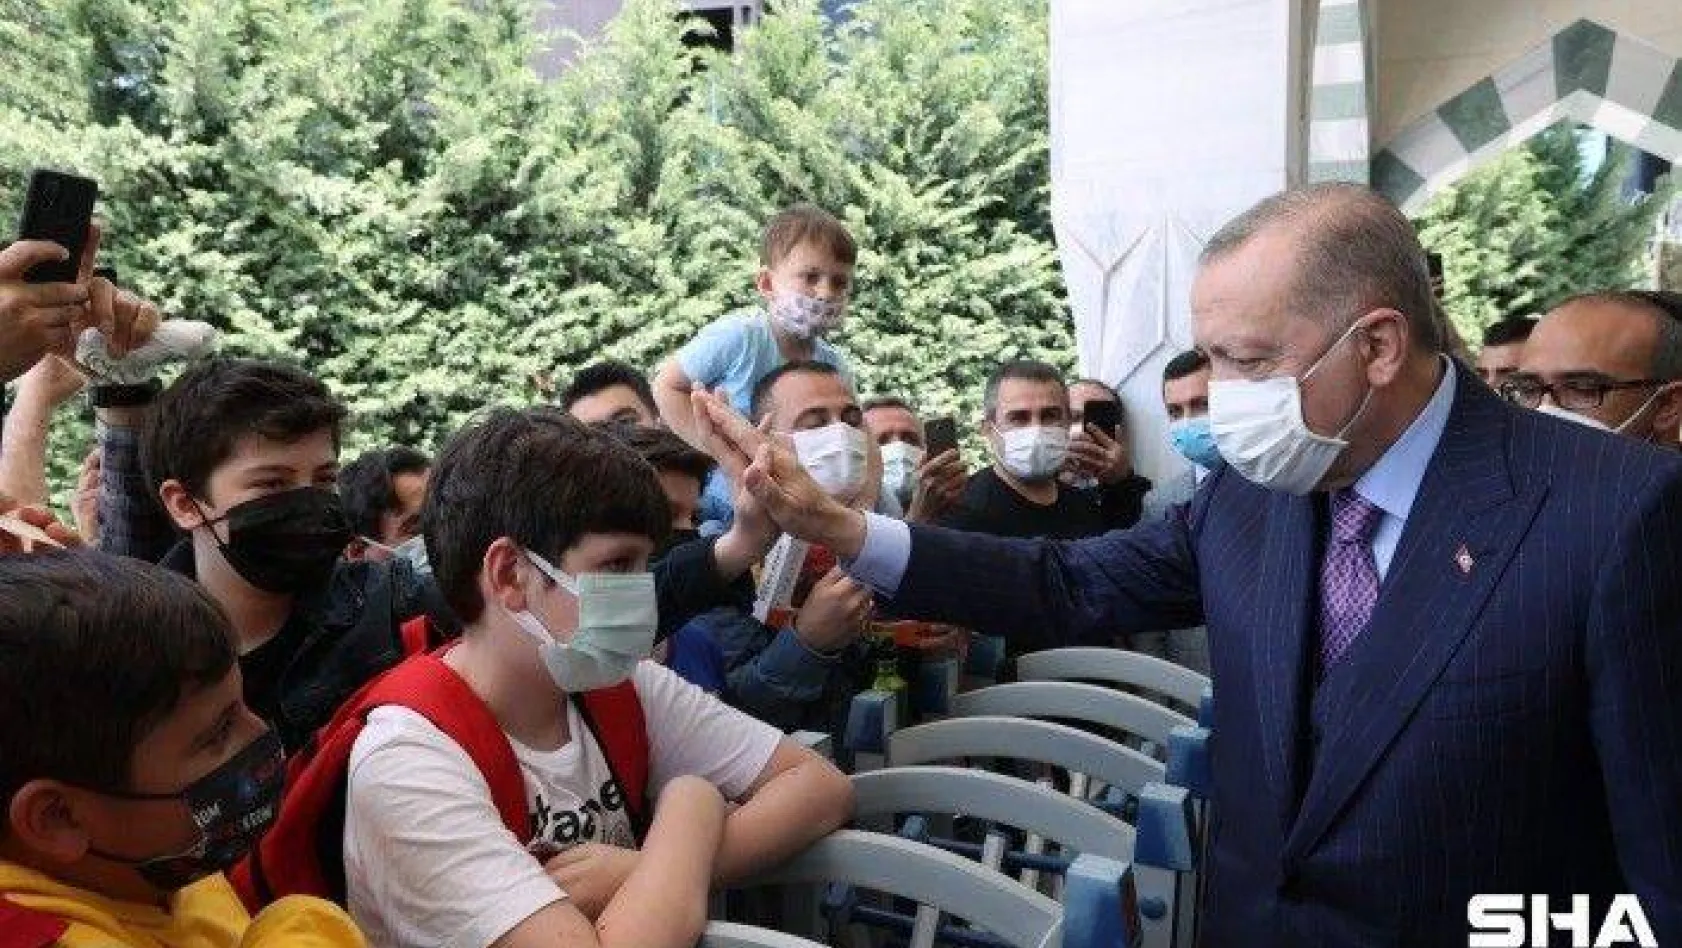 Cumhurbaşkanı Erdoğan Kovid aşıları patentiyle ilgili: 'Bunu biz ürettik, dolayısıyla kimseye vermeyiz' gibi bir mantık yanlış bir yaklaşımdır'